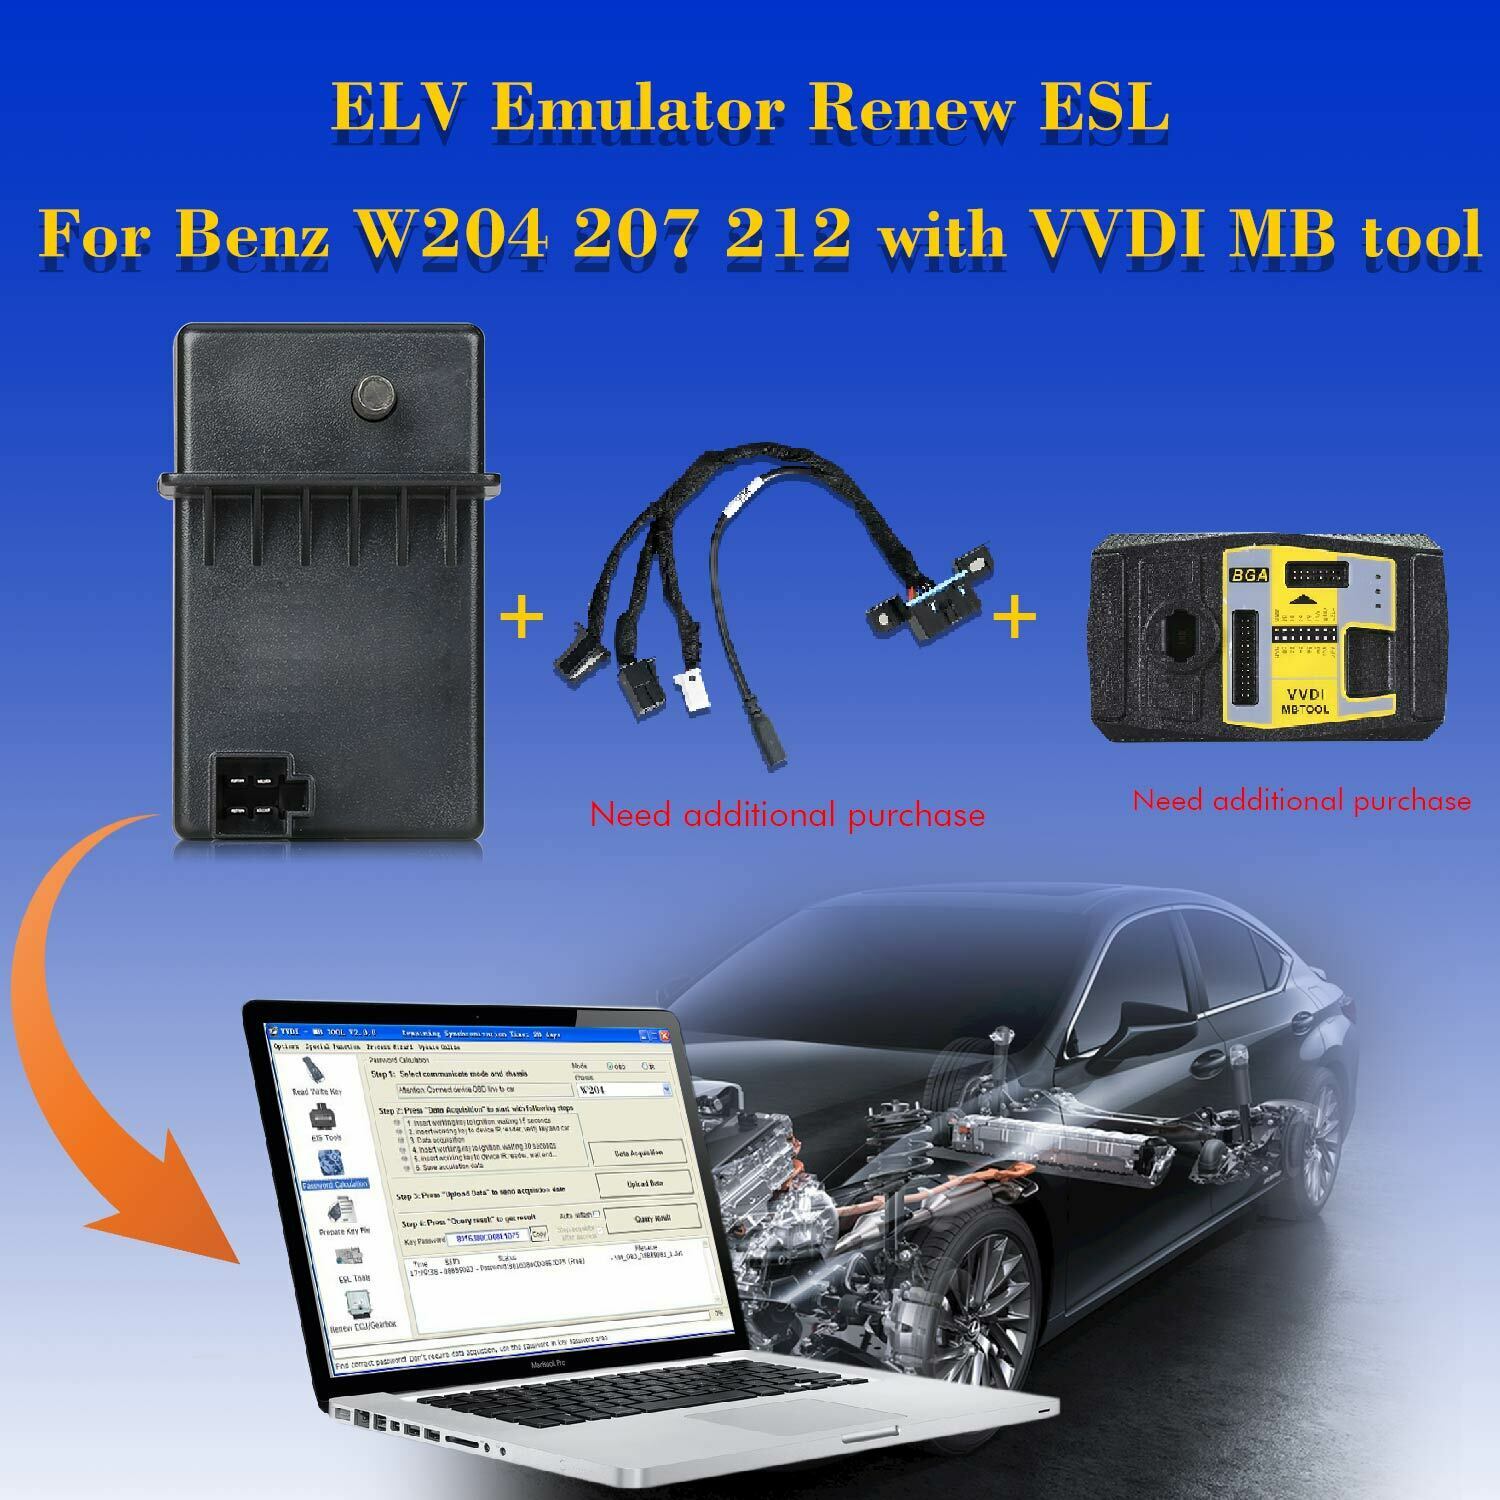 XHORSE VVDI MB ESL Emulator for Benz W204 W207 W212